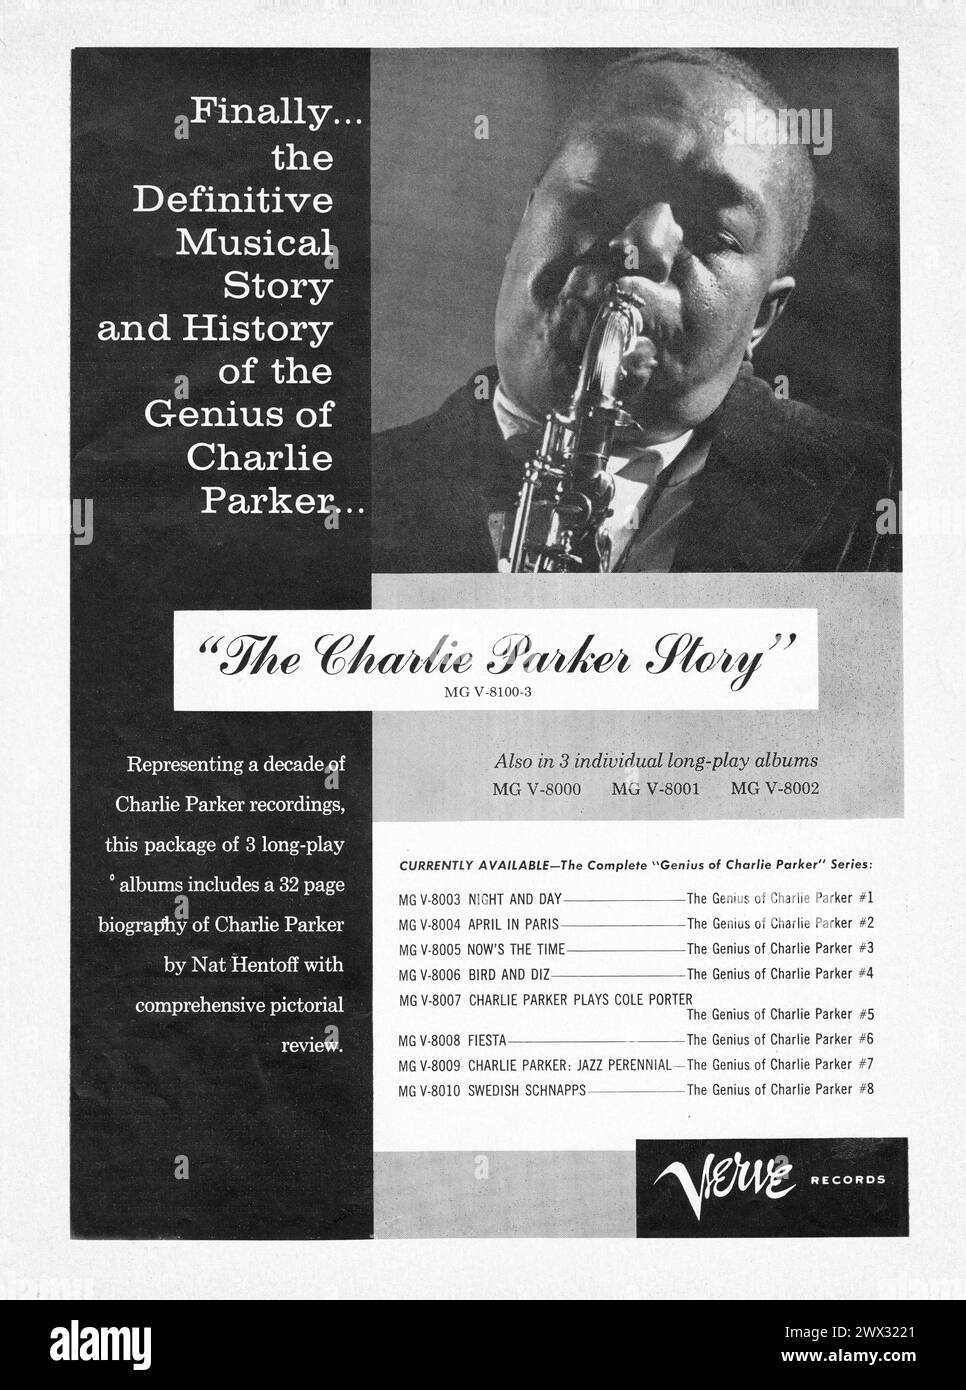 Une publicité Verve pour un ensemble de 3 LP des enregistrements du géant du jazz, Charlie Parker. C'est un exemple précoce de marchandisage d'un coffret. D'un magazine musical des années 1960. Banque D'Images